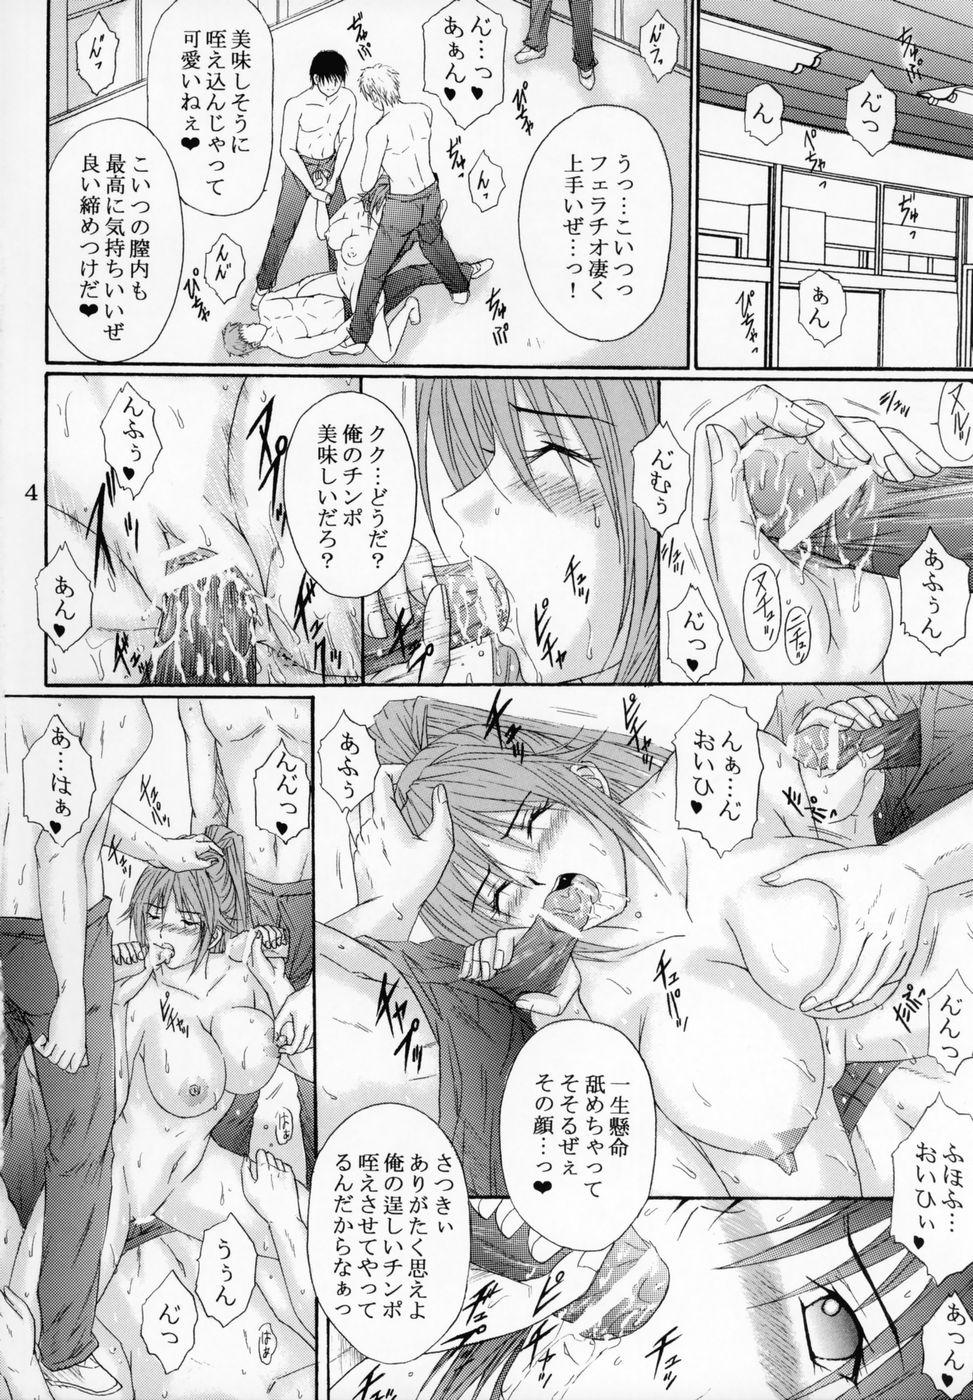 Cheerleader Ryoujoku Rensa 7 - Ichigo 100 Teenage Porn - Page 3